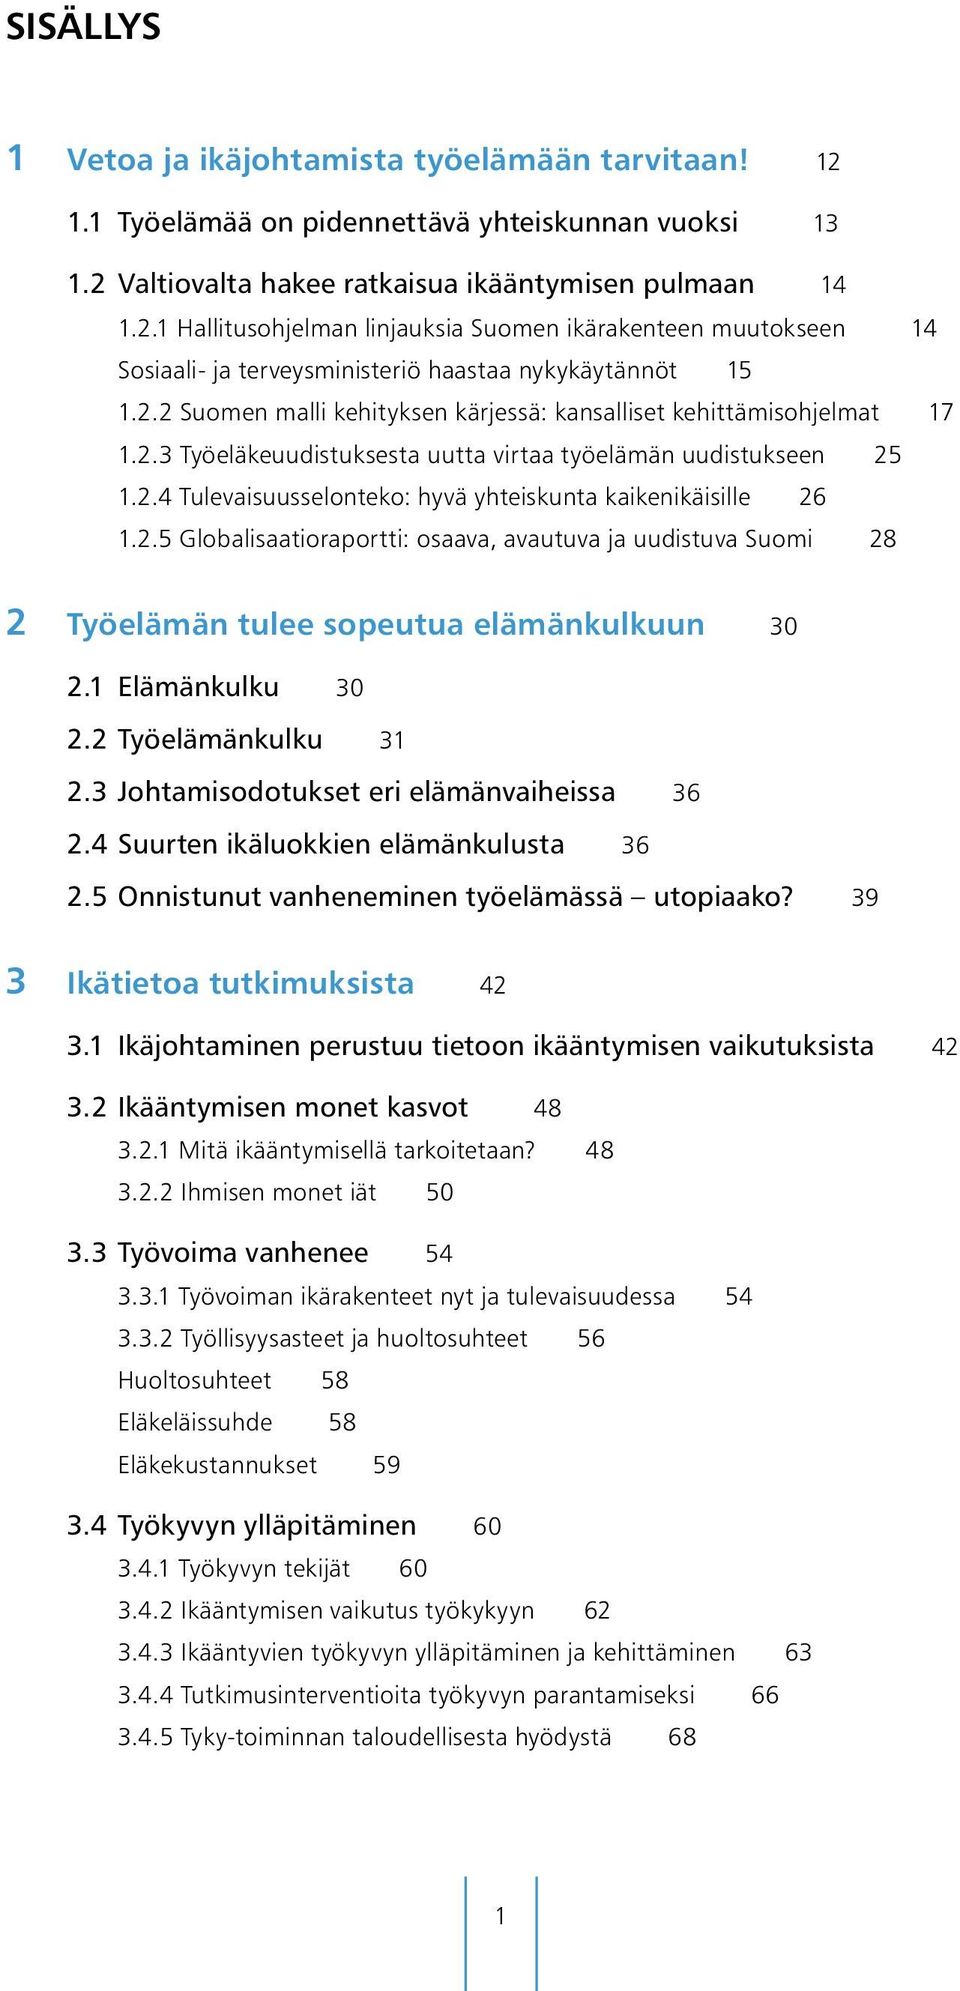 2.5 Globalisaatioraportti: osaava, avautuva ja uudistuva Suomi 28 2 Työelämän tulee sopeutua elämänkulkuun 30 2.1 Elämänkulku 30 2.2 Työelämänkulku 31 2.3 Johtamisodotukset eri elämänvaiheissa 36 2.